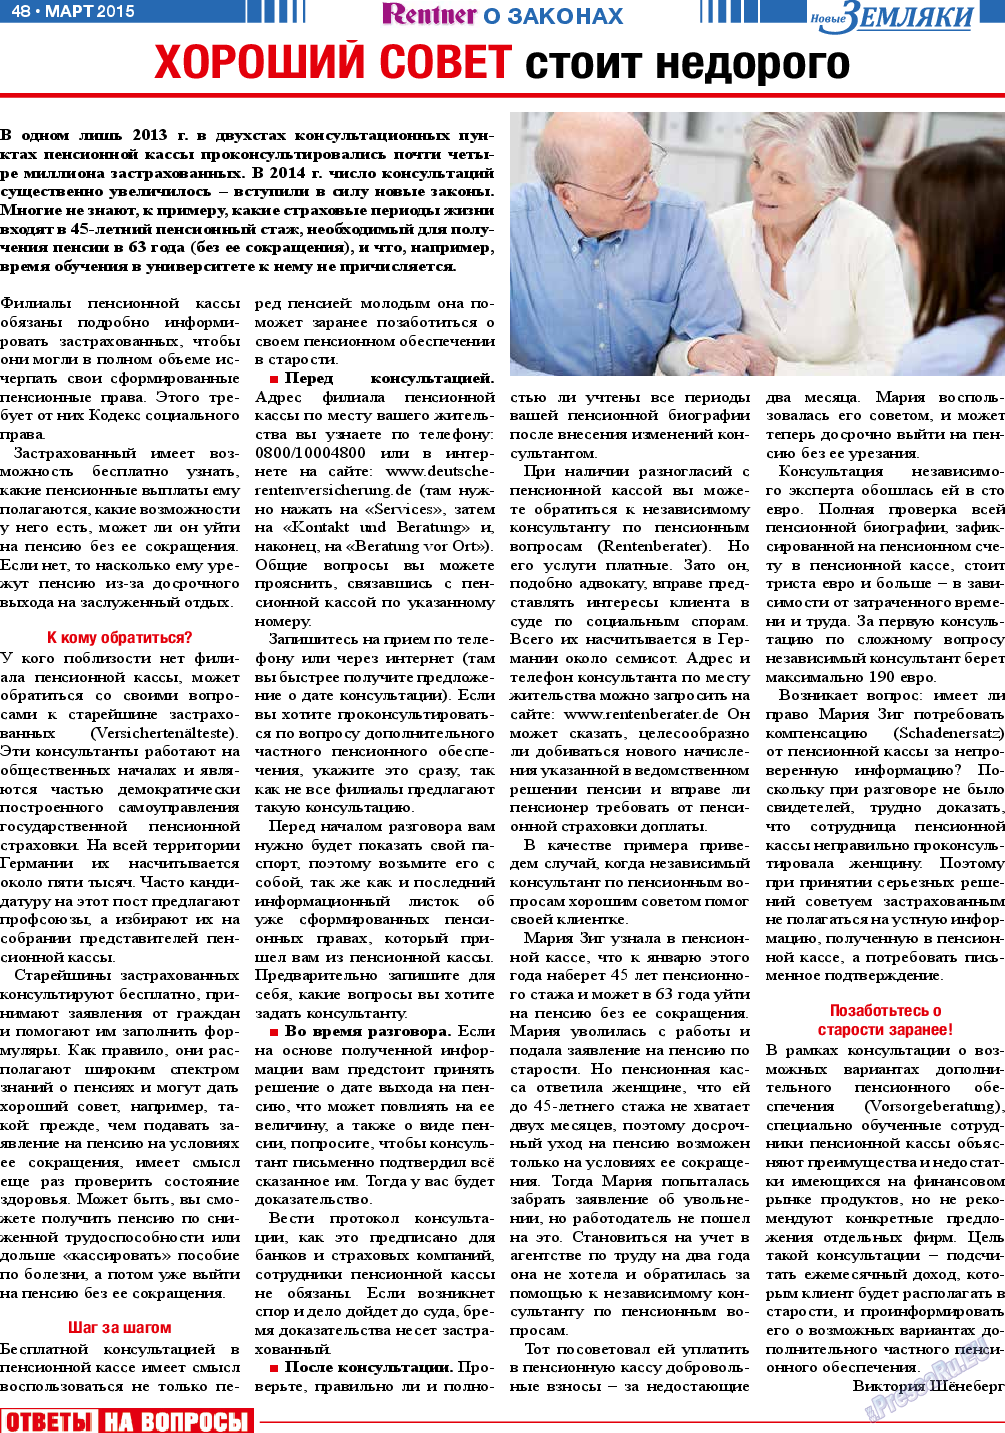 Новые Земляки, газета. 2015 №3 стр.48